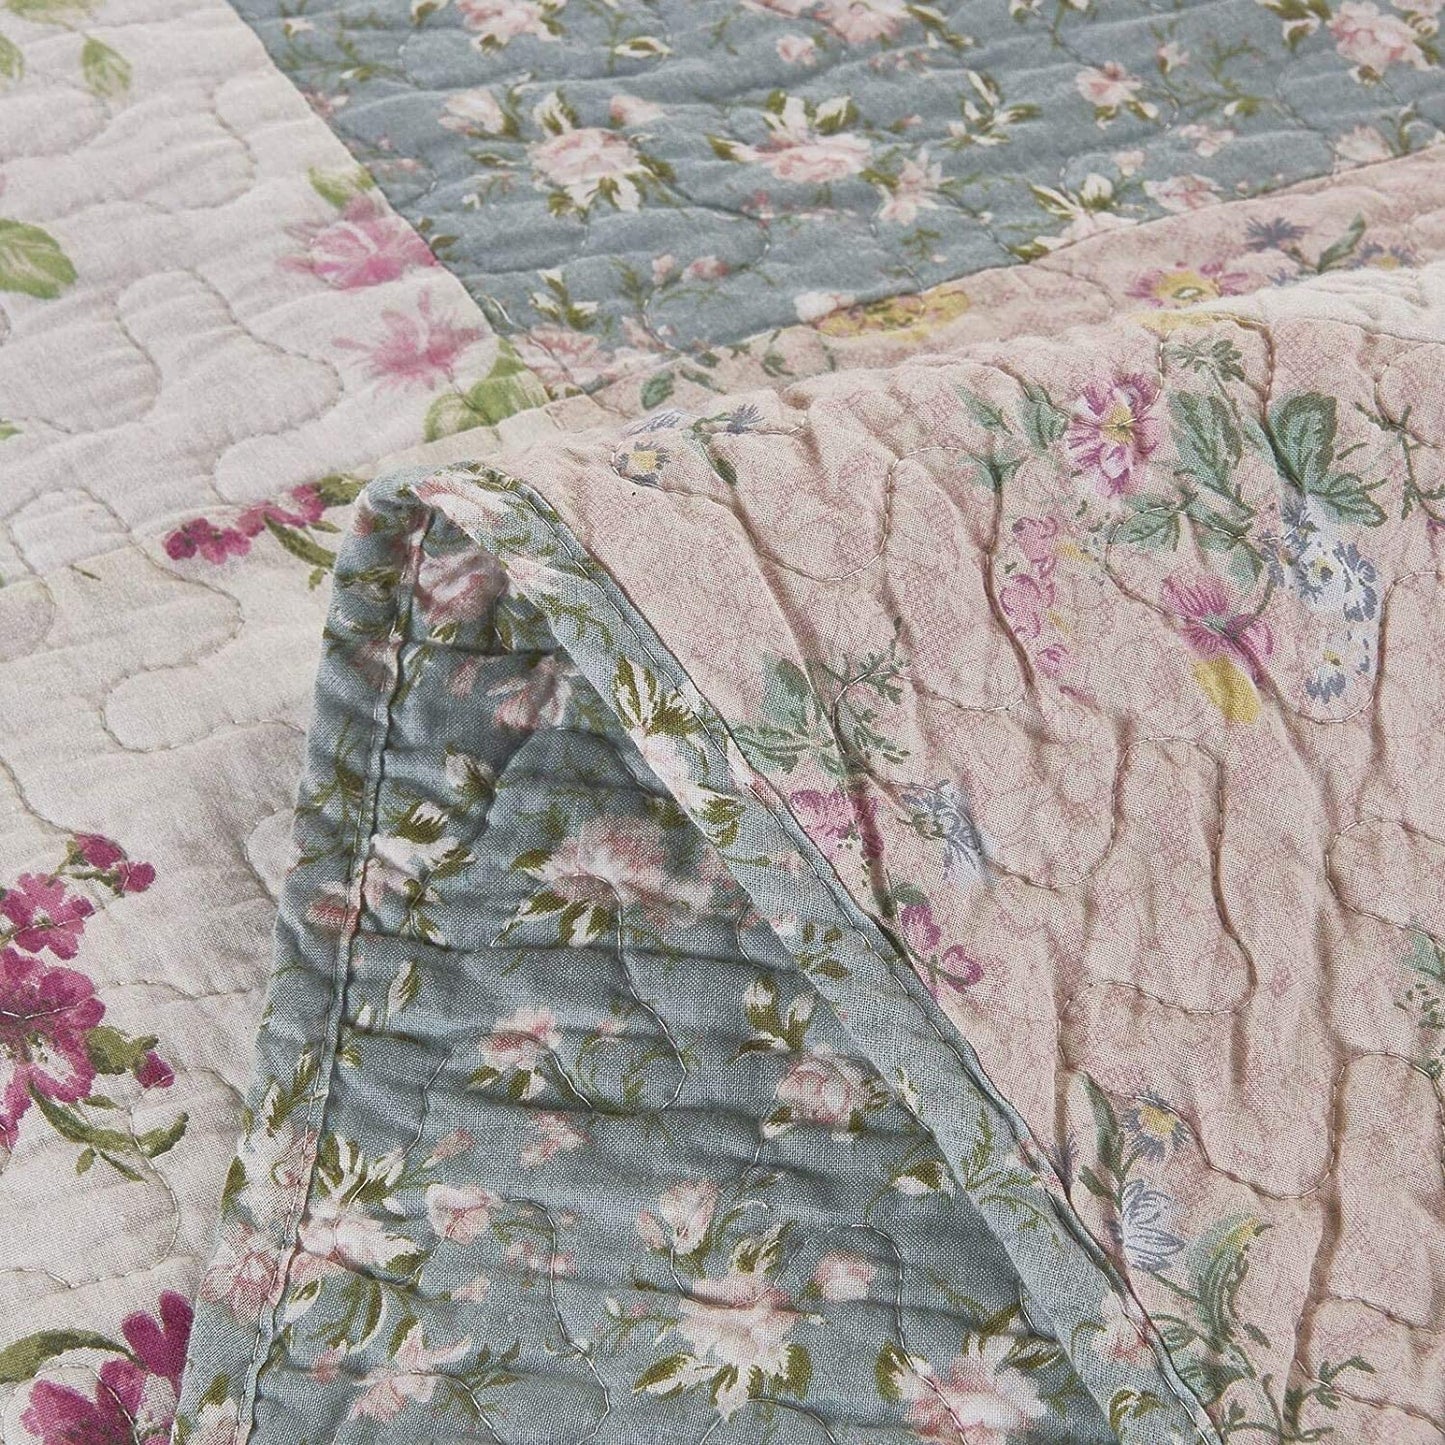 Pure Cotton Washed-Cotton Vintage Garden Floral Reversible Patchwork Quilt Set 3 Pieces Quilt Set with 2 Pillowcases